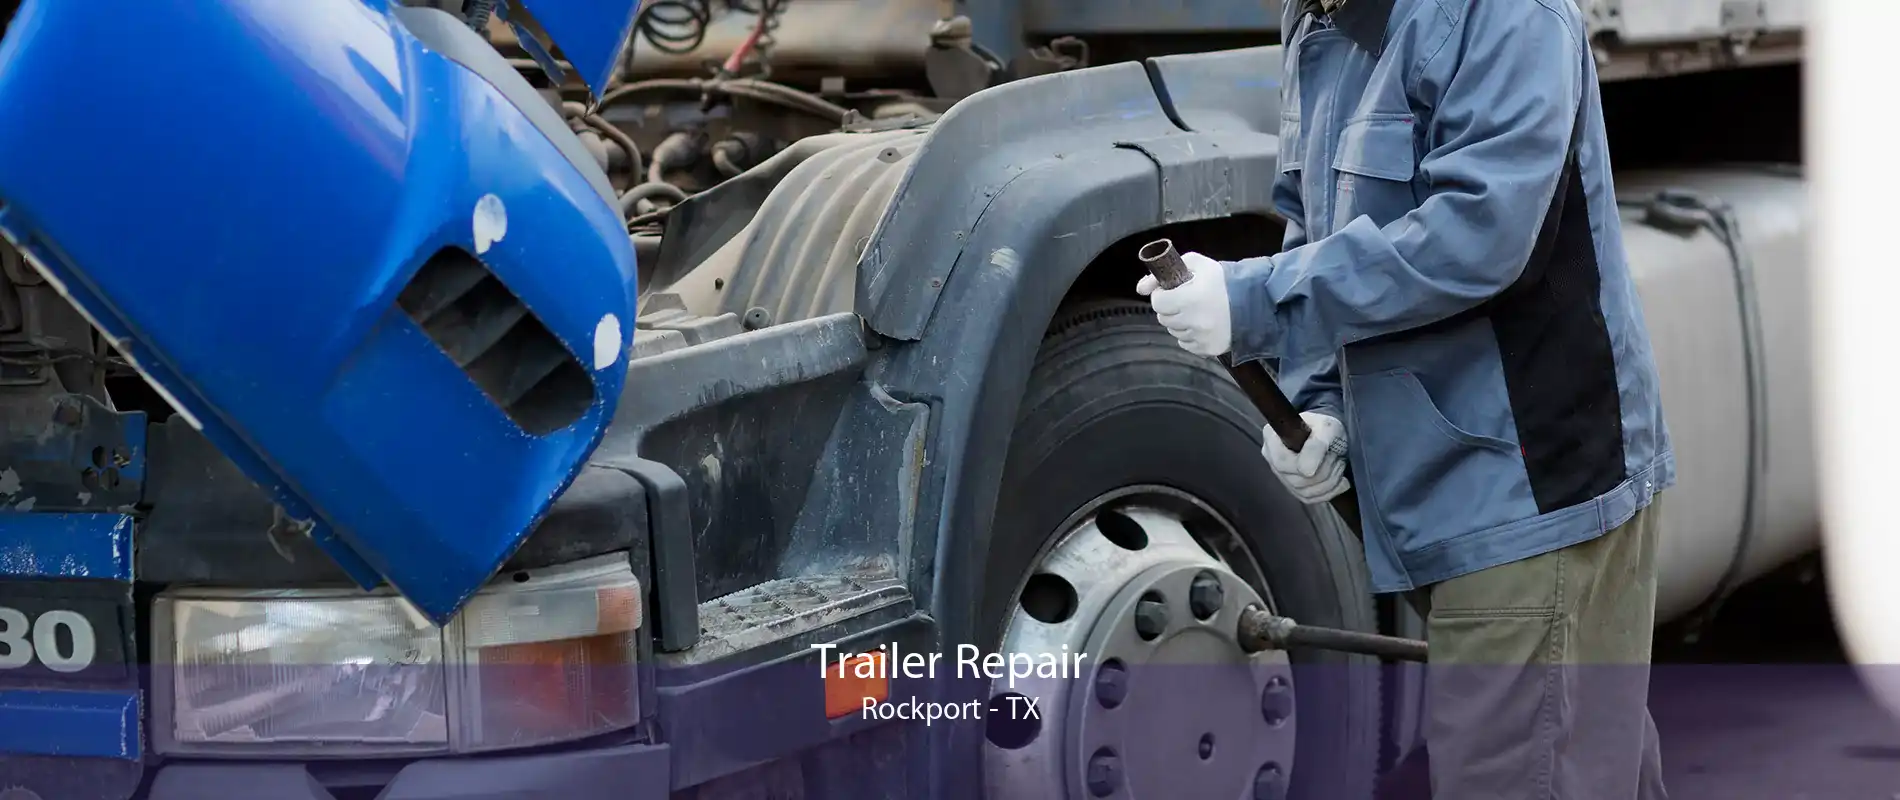 Trailer Repair Rockport - TX